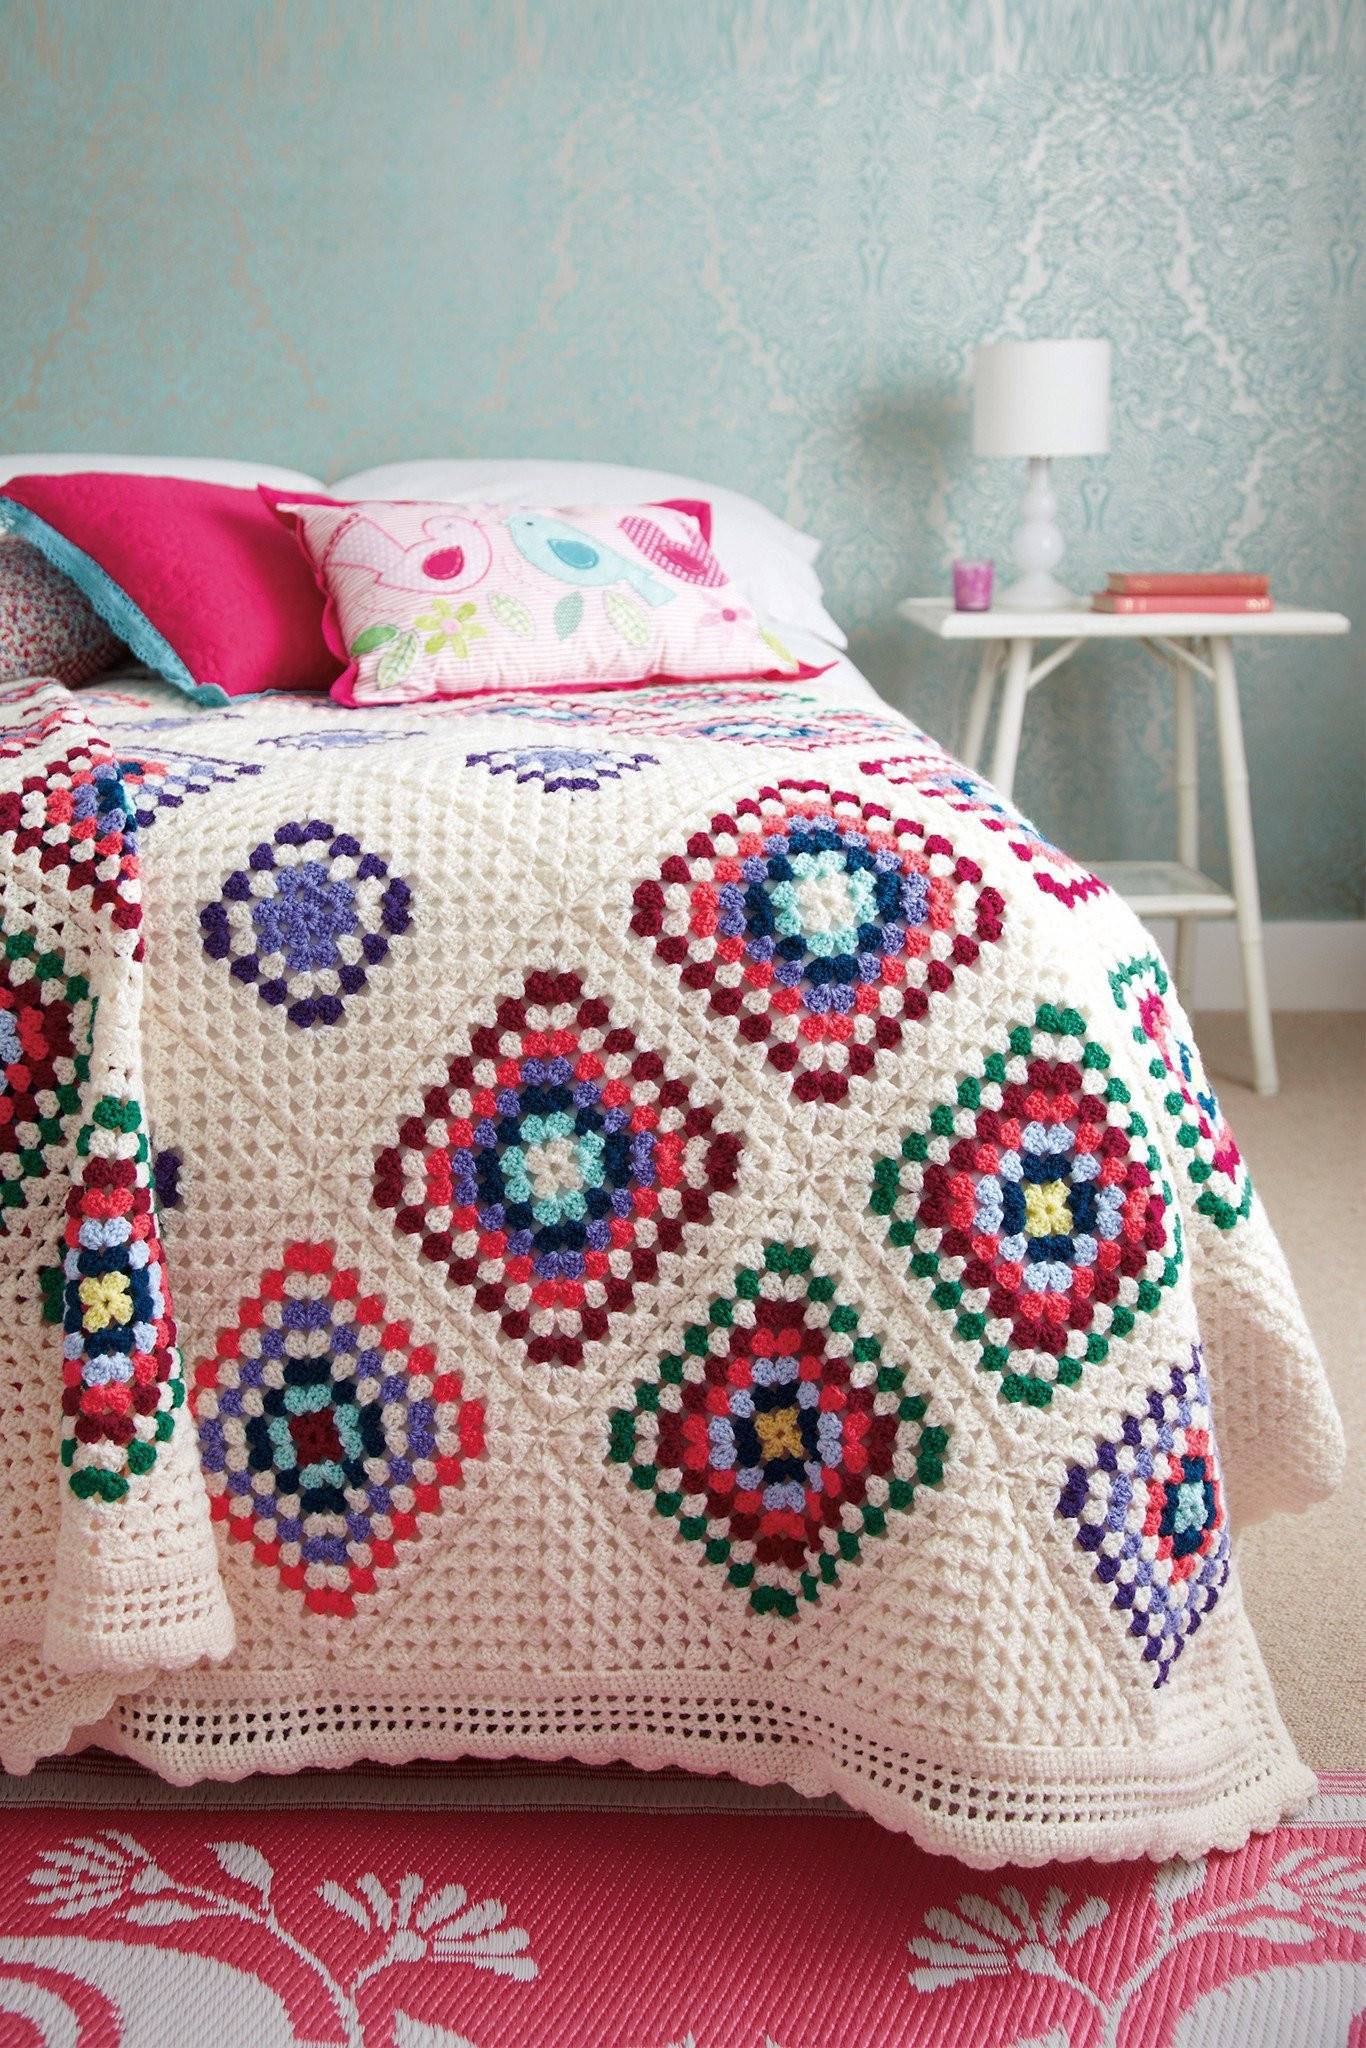 Granny Square Blanket Crochet Pattern The Knitting Network